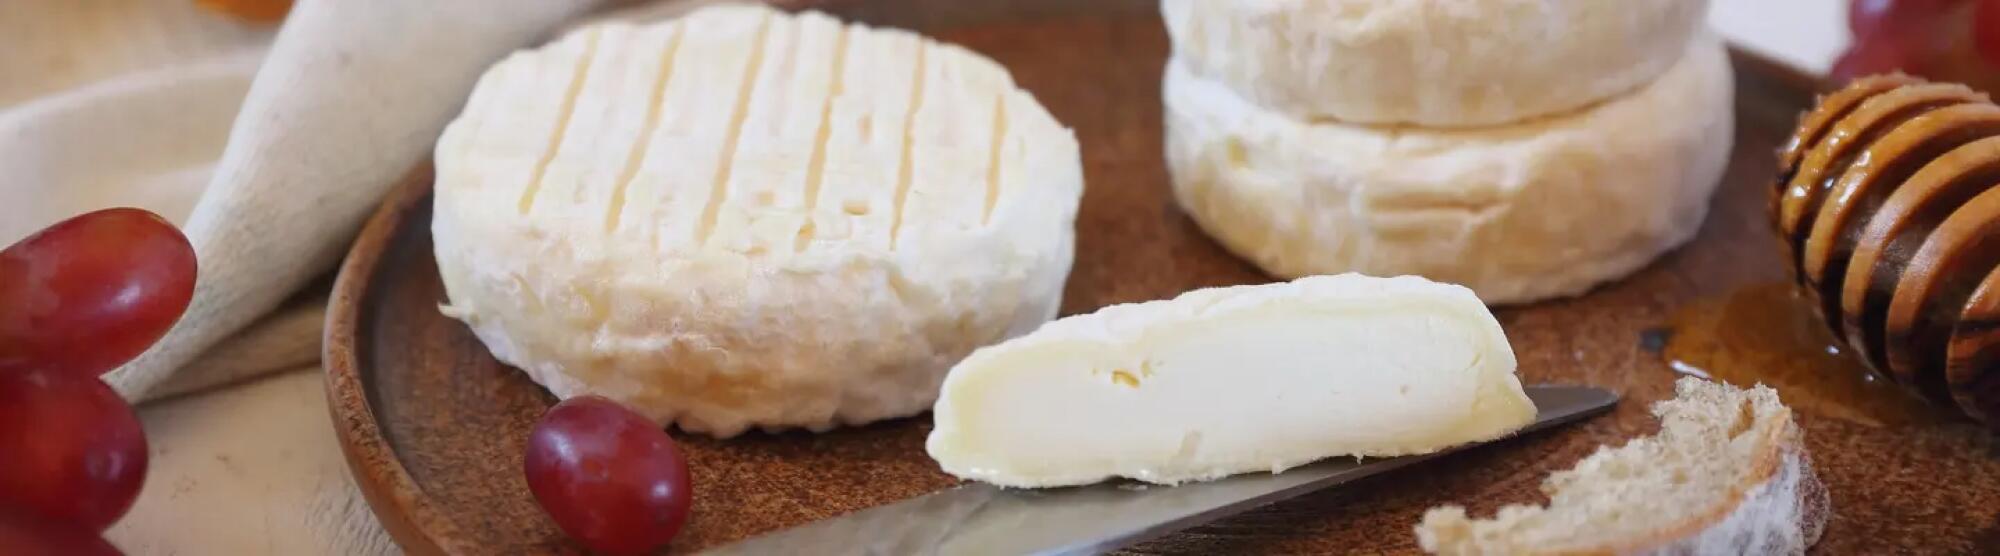 LA02_calories-fromage-de-chevre